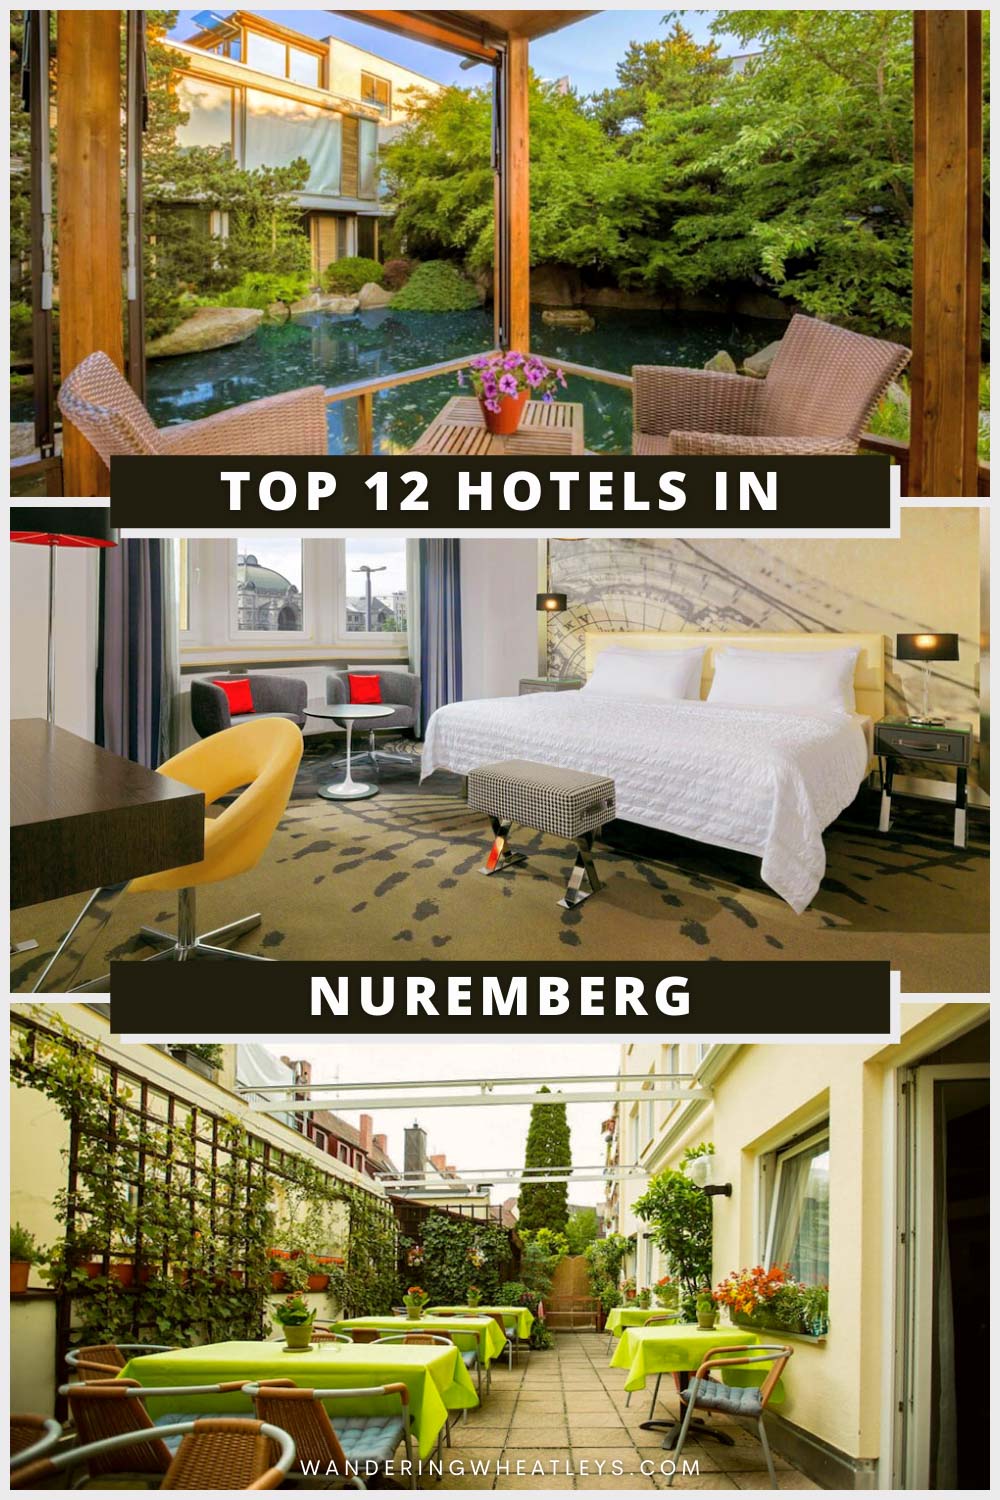 The Best Hotels in Nuremberg, Germany.